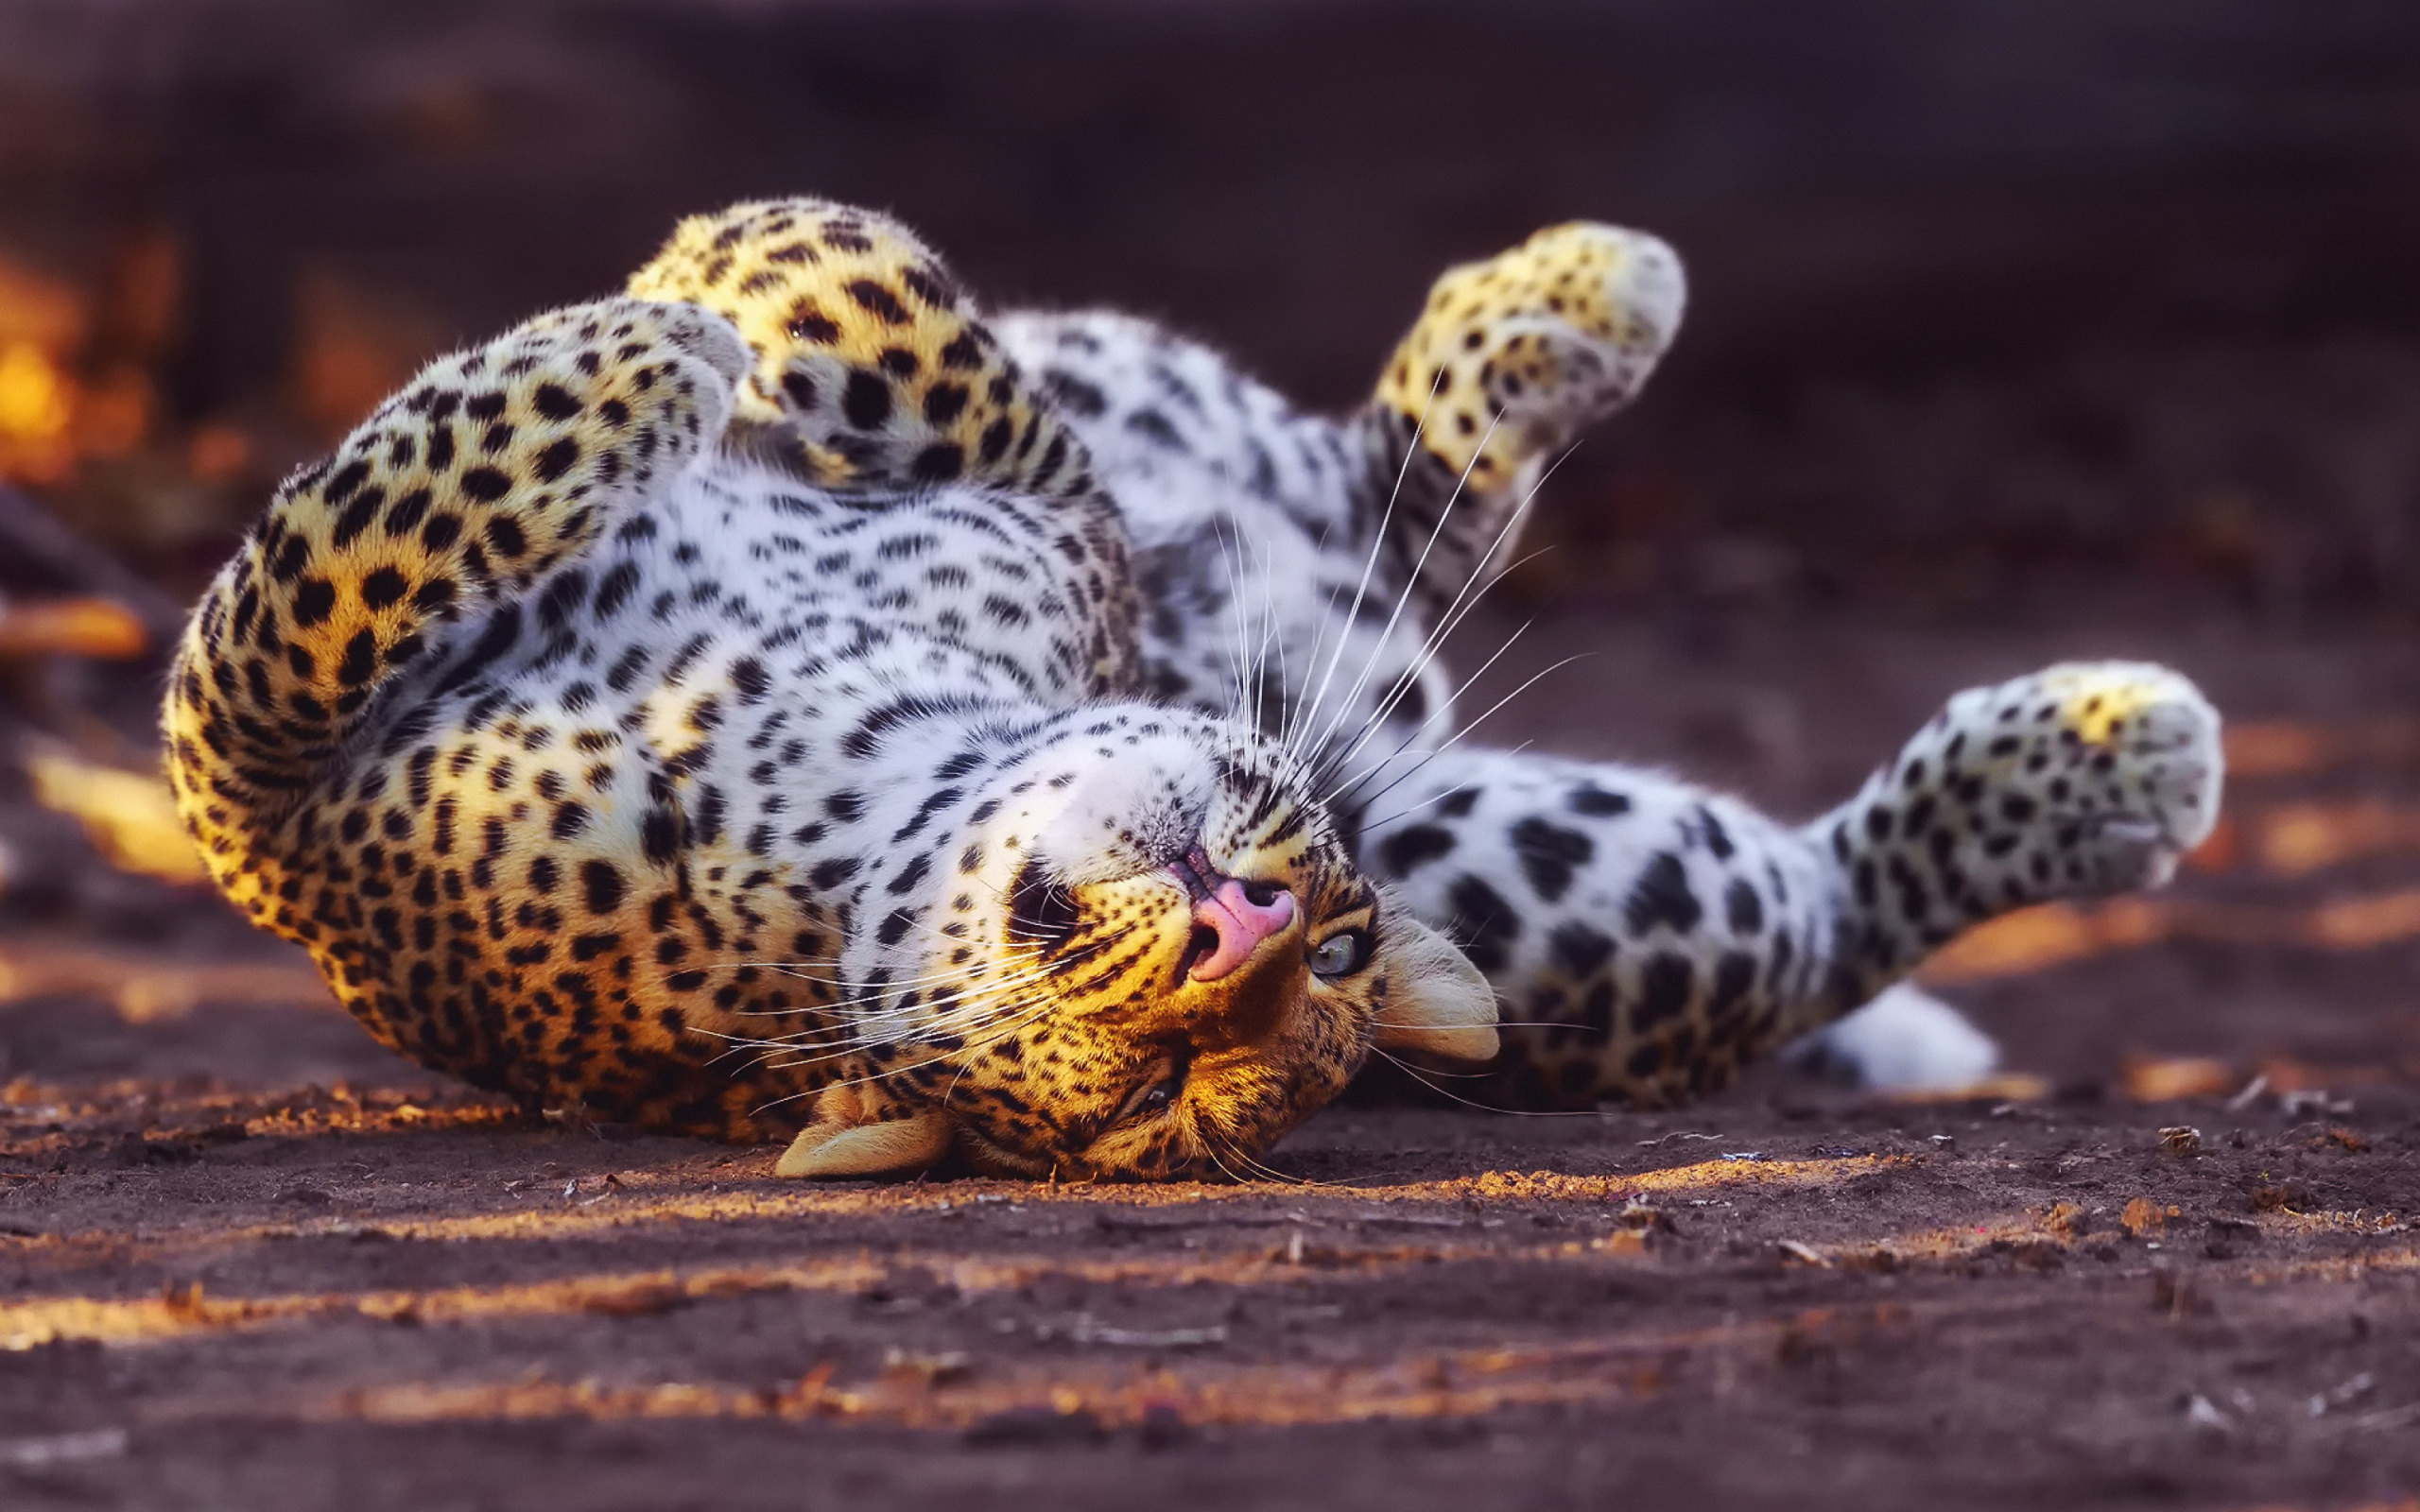 Leopard in Zoo wallpaper 2560x1600